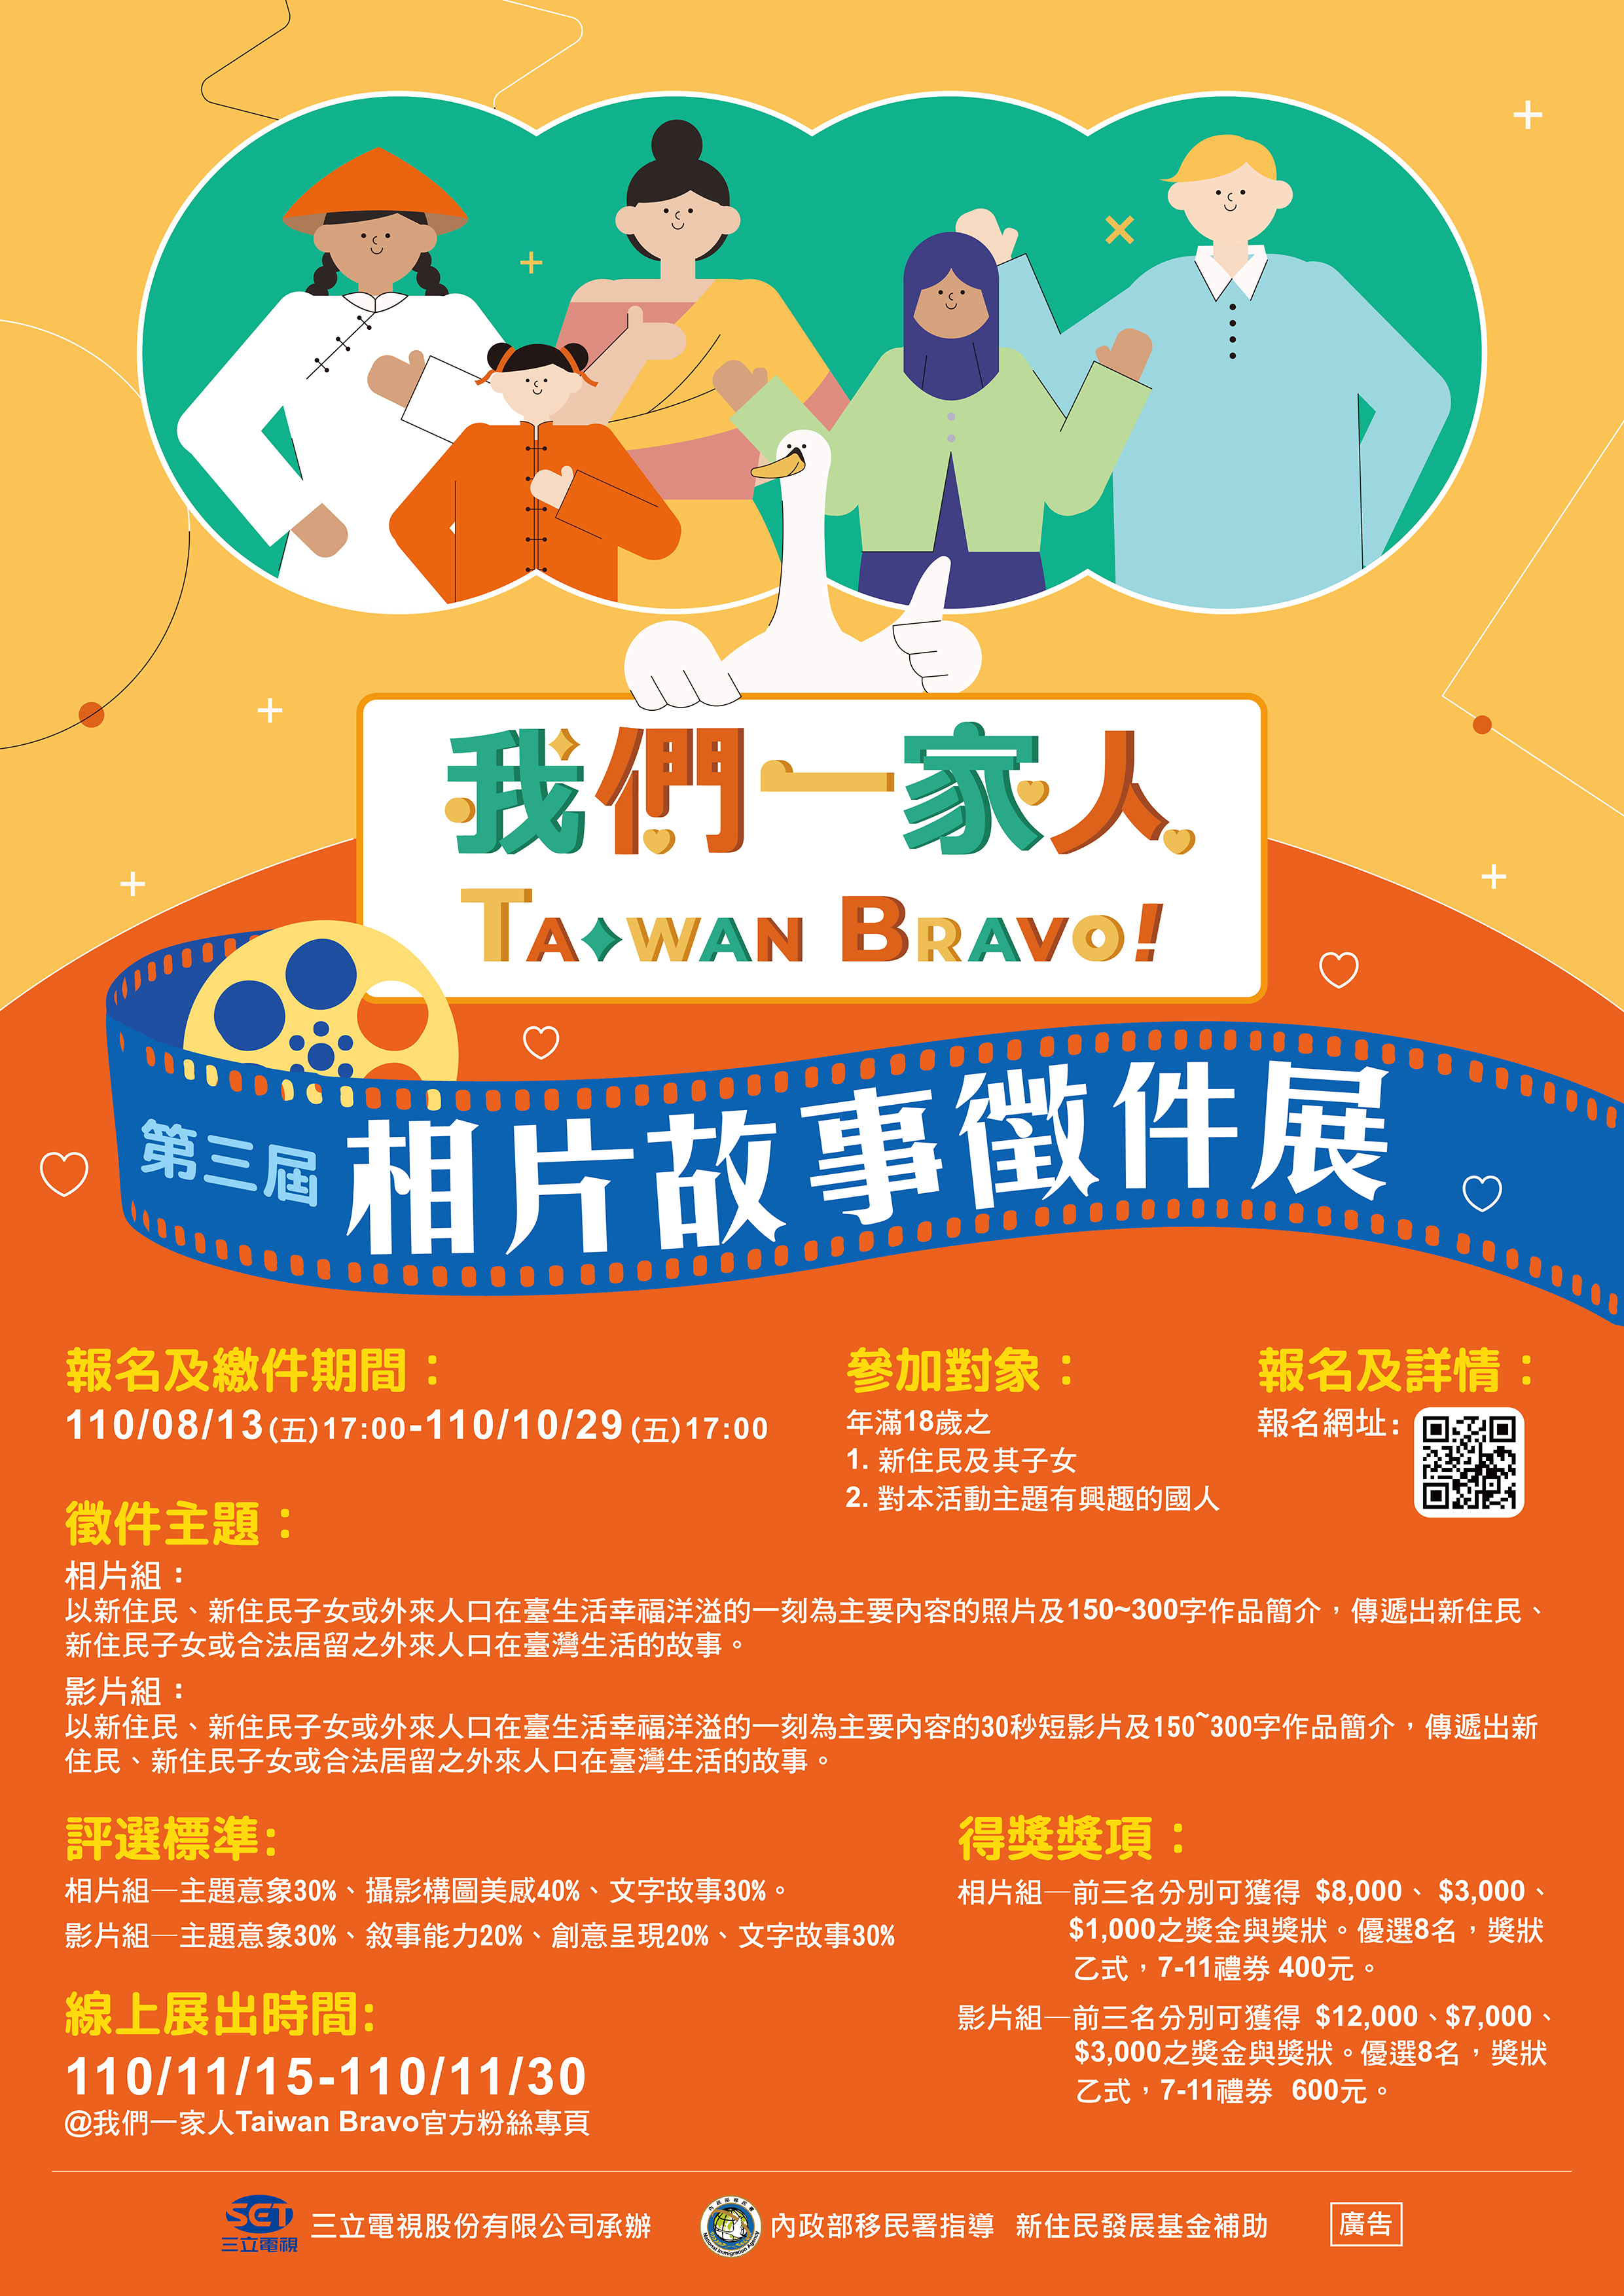 Hoan nghênh các di dân mới và con cái của di dân mới nộp tác phẩm tham gia triển lãm (dưới hình thức tranh ảnh, video) để chia sẻ câu chuyện cuộc sống của mình với đông đảo công chúng Đài Loan. (Nguồn ảnh: Triển lãm “Chúng ta là một gia đình Taiwan Bravo!”)